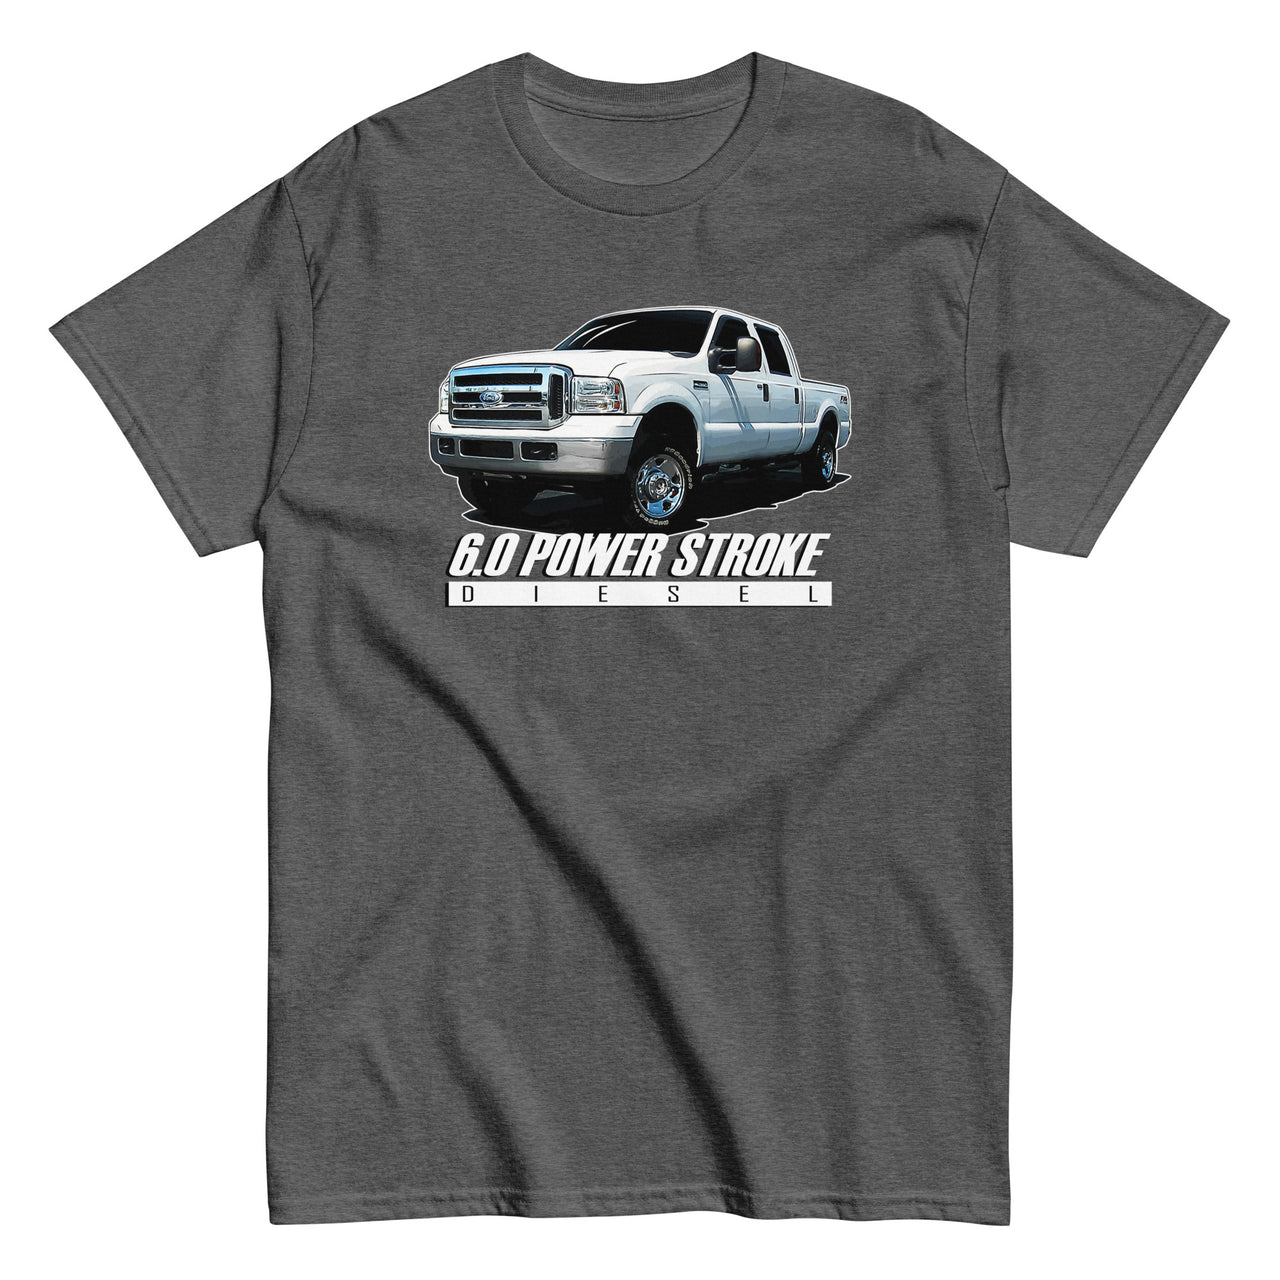 6.0 Power Stroke Diesel T-Shirt in grey